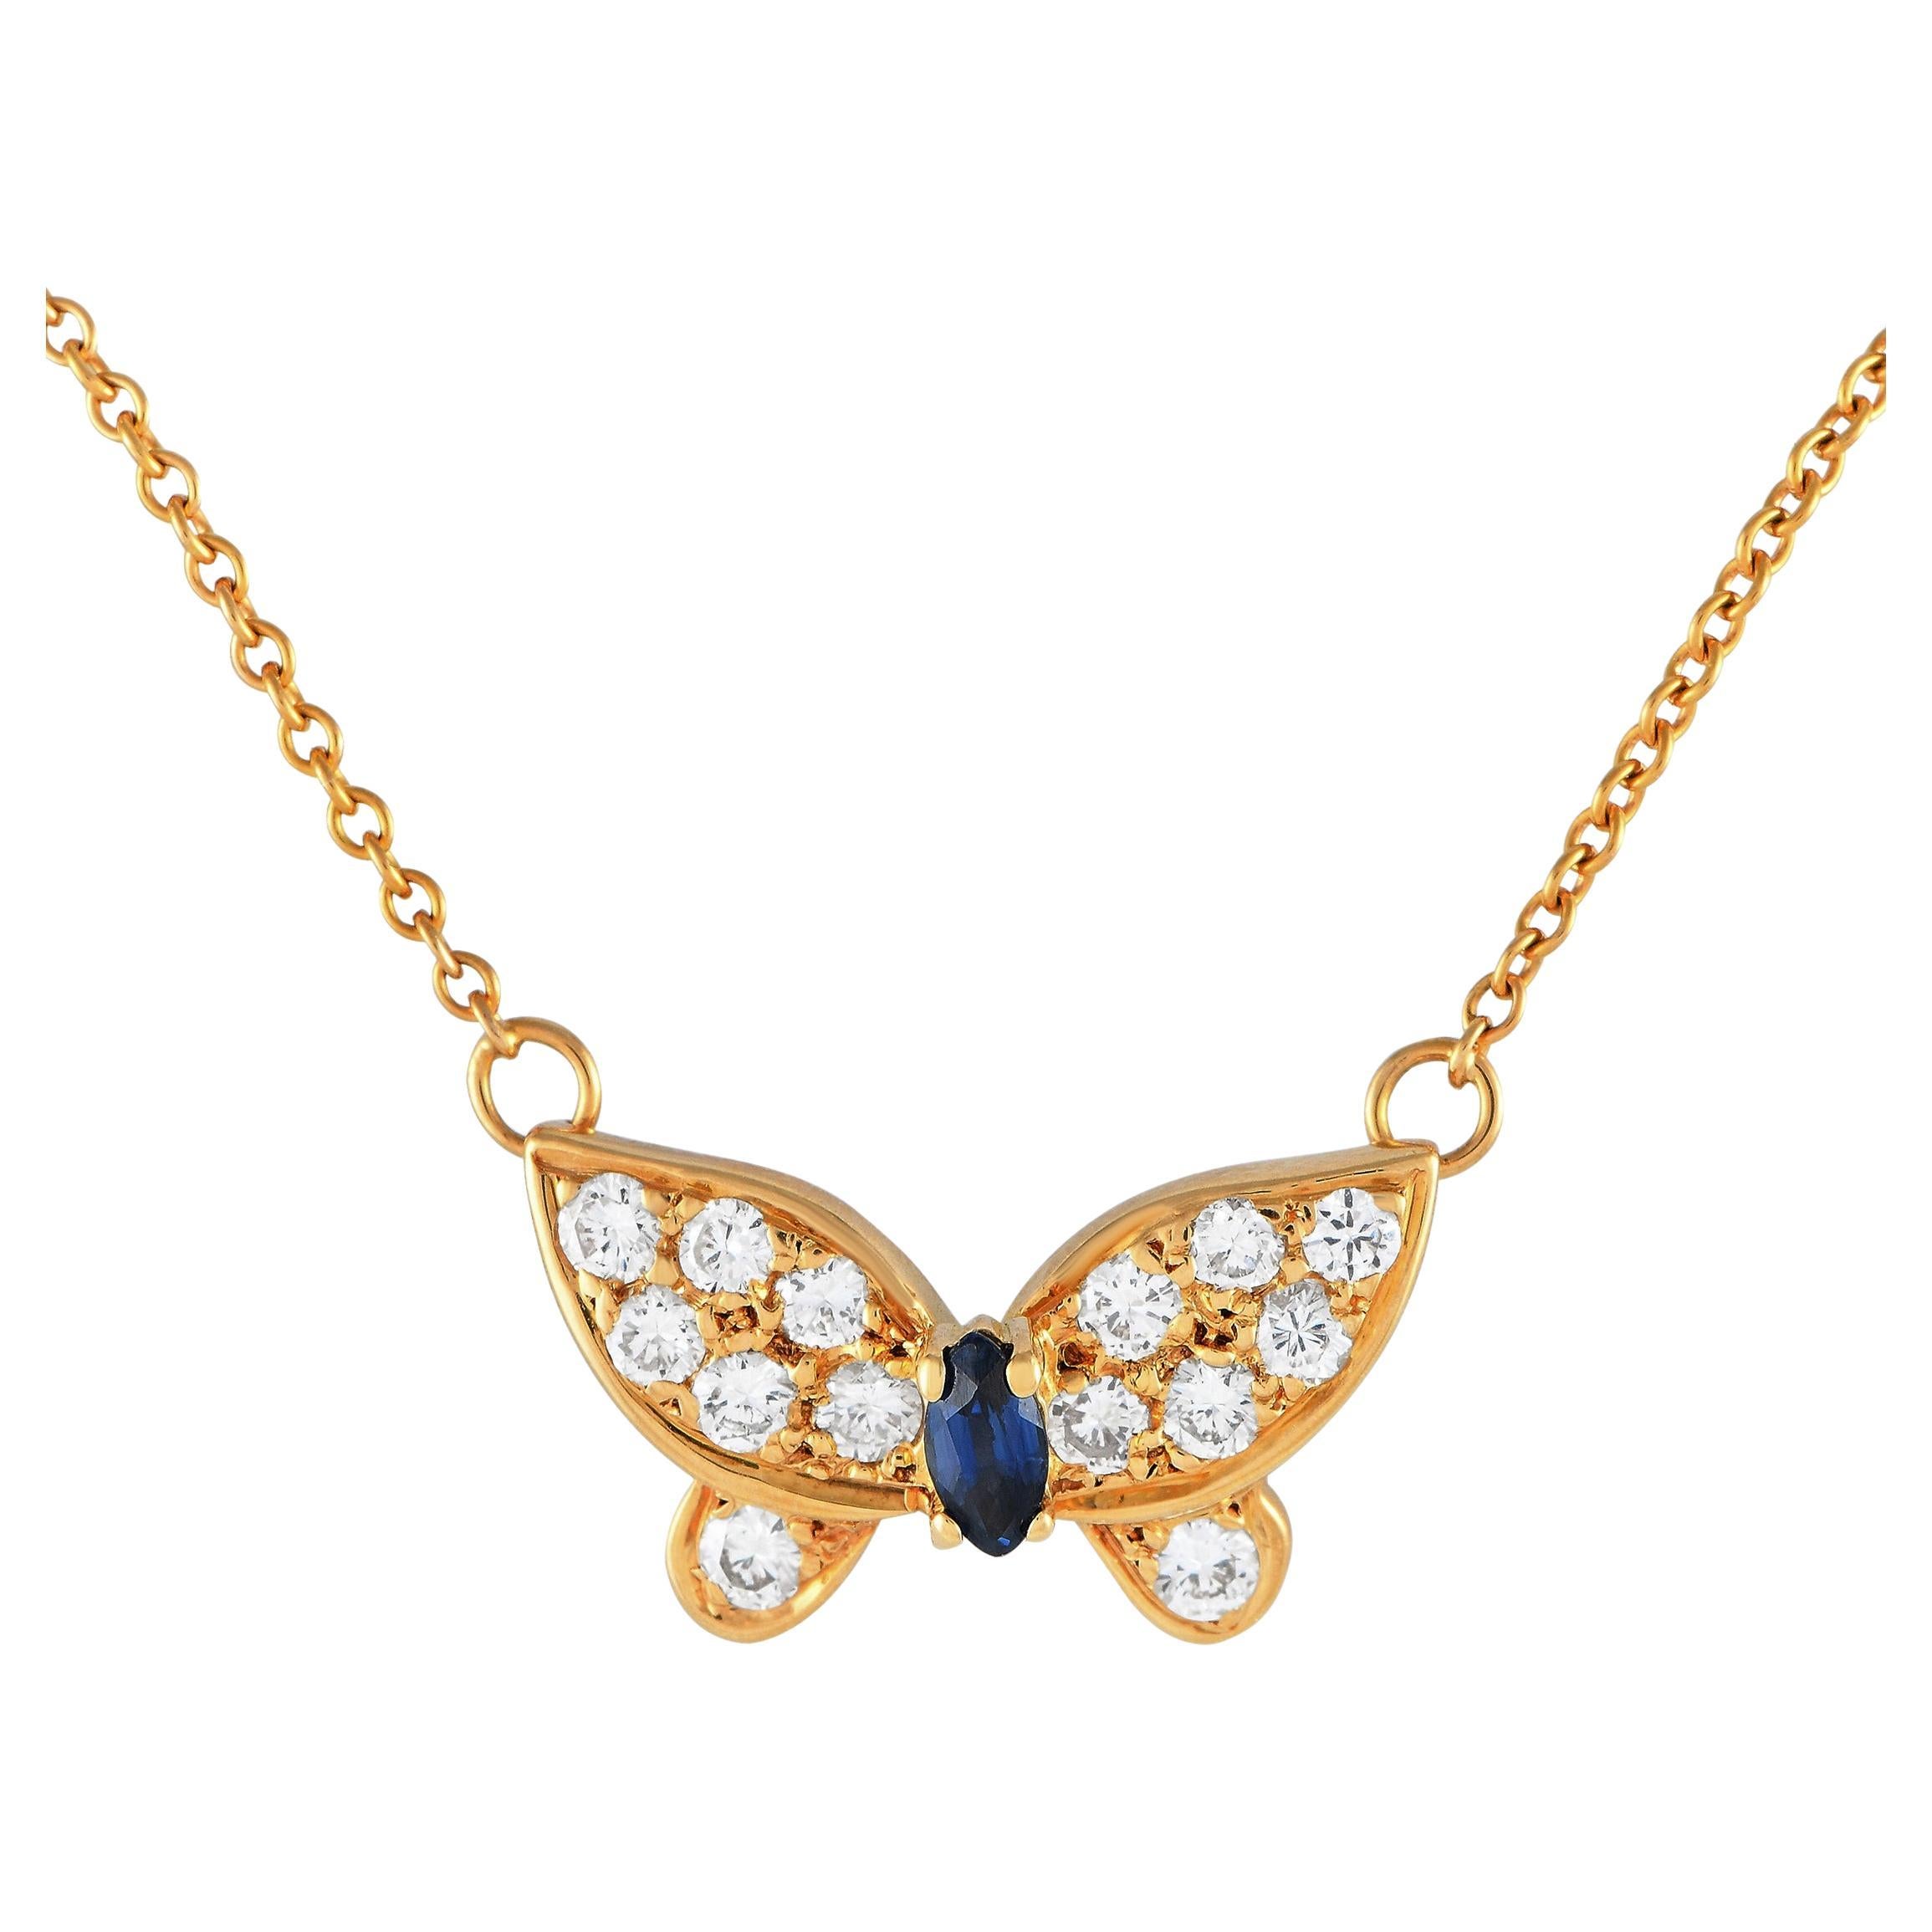 Van Cleef & Arpels Halskette mit Blumen-Spitze-Anhänger, 18 Karat Weißgold 2,37 Karat Diamant